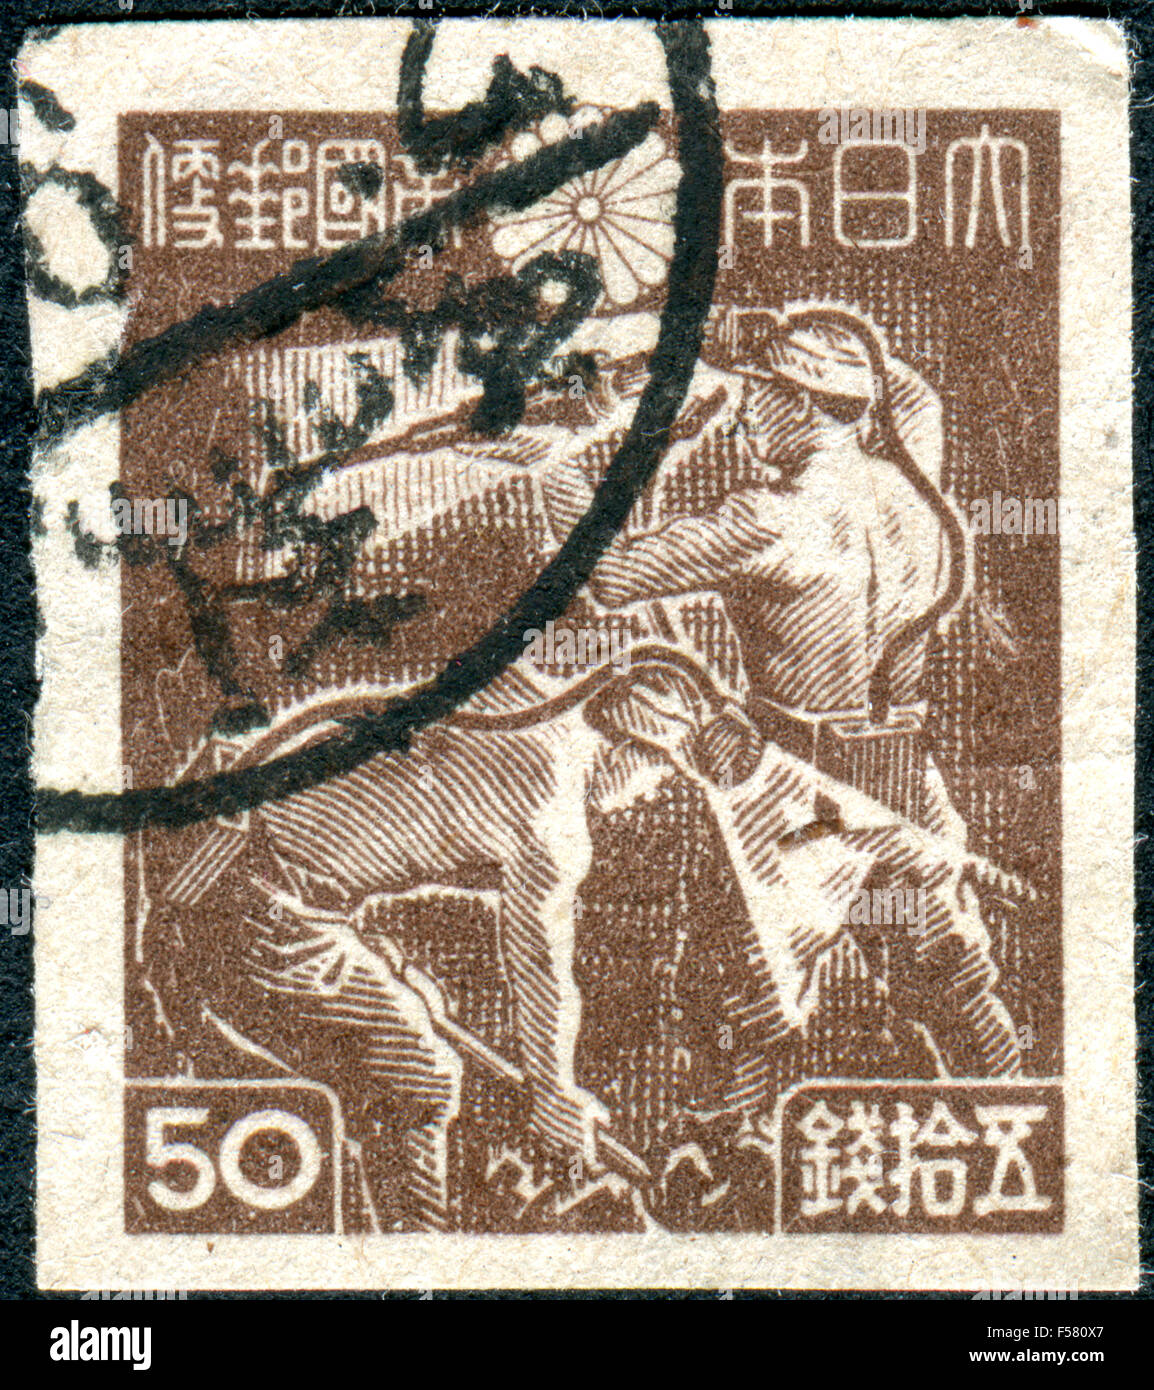 Japon - circa 1946 : timbre-poste imprimé au Japon, montre les mineurs de charbon, vers 1946 Banque D'Images